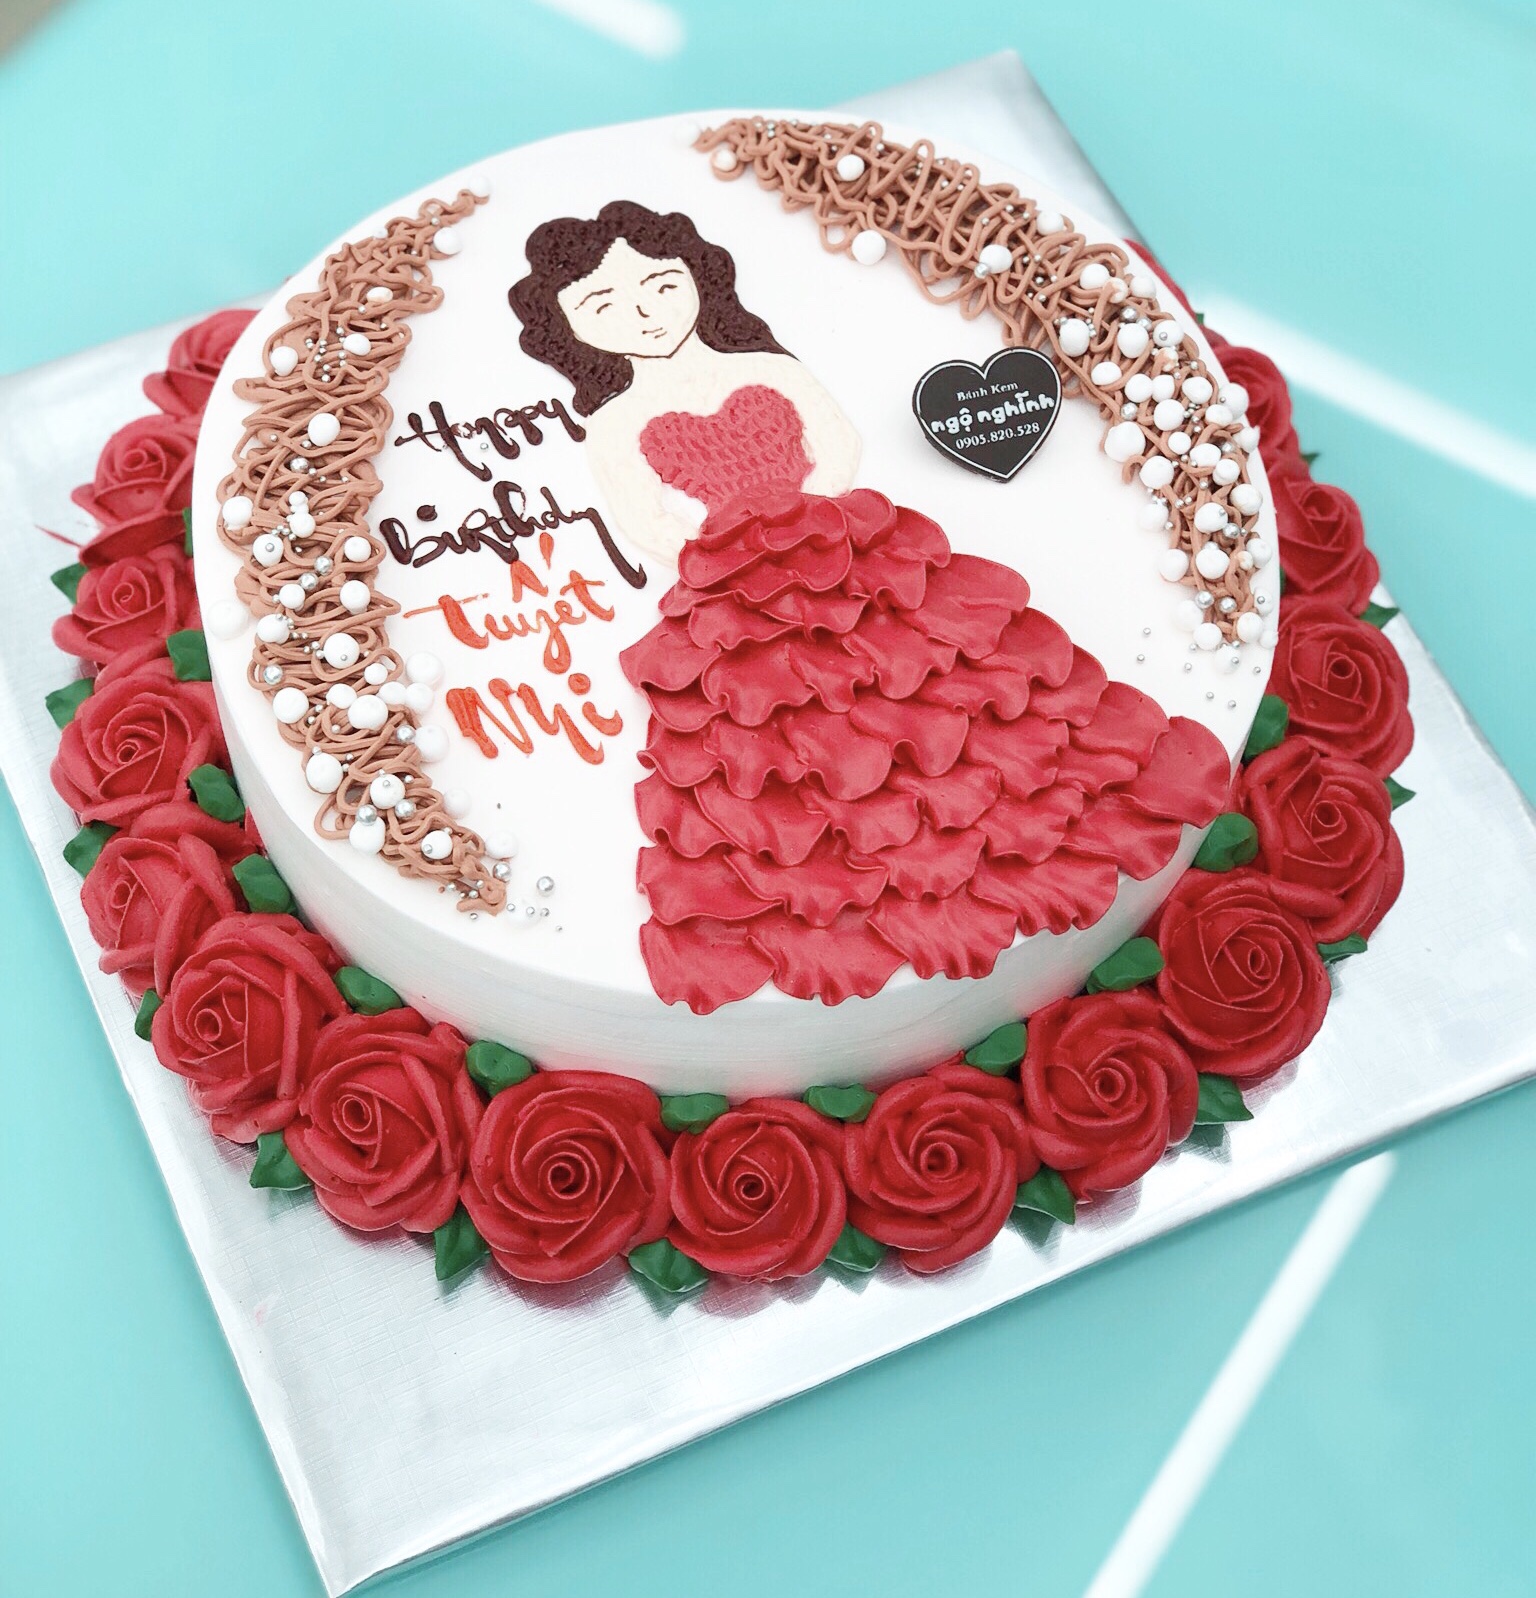 Bạn có thích những chiếc bánh sinh nhật đẹp mắt và phù hợp với bạn gái của mình? Chiếc bánh sinh nhật vẽ hình cô gái này sẽ làm bạn hài lòng! Hãy xem hình ảnh để cảm nhận sự đẹp mắt và tinh tế của chiếc bánh này.